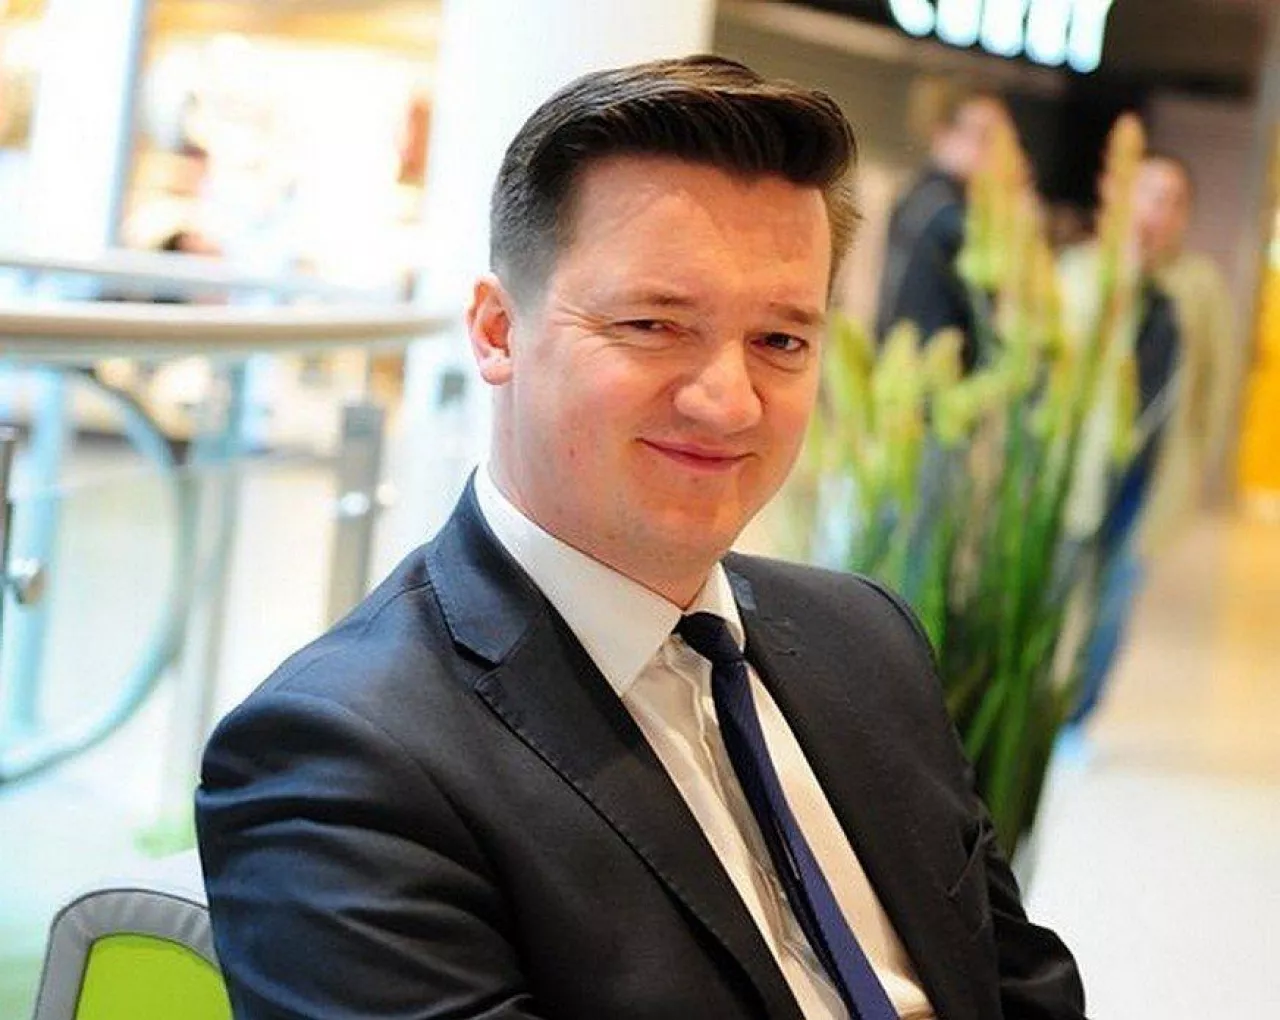 Paweł Dolański, dyrektor działu aktywów w Carrefour Polska (mat. prasowe)